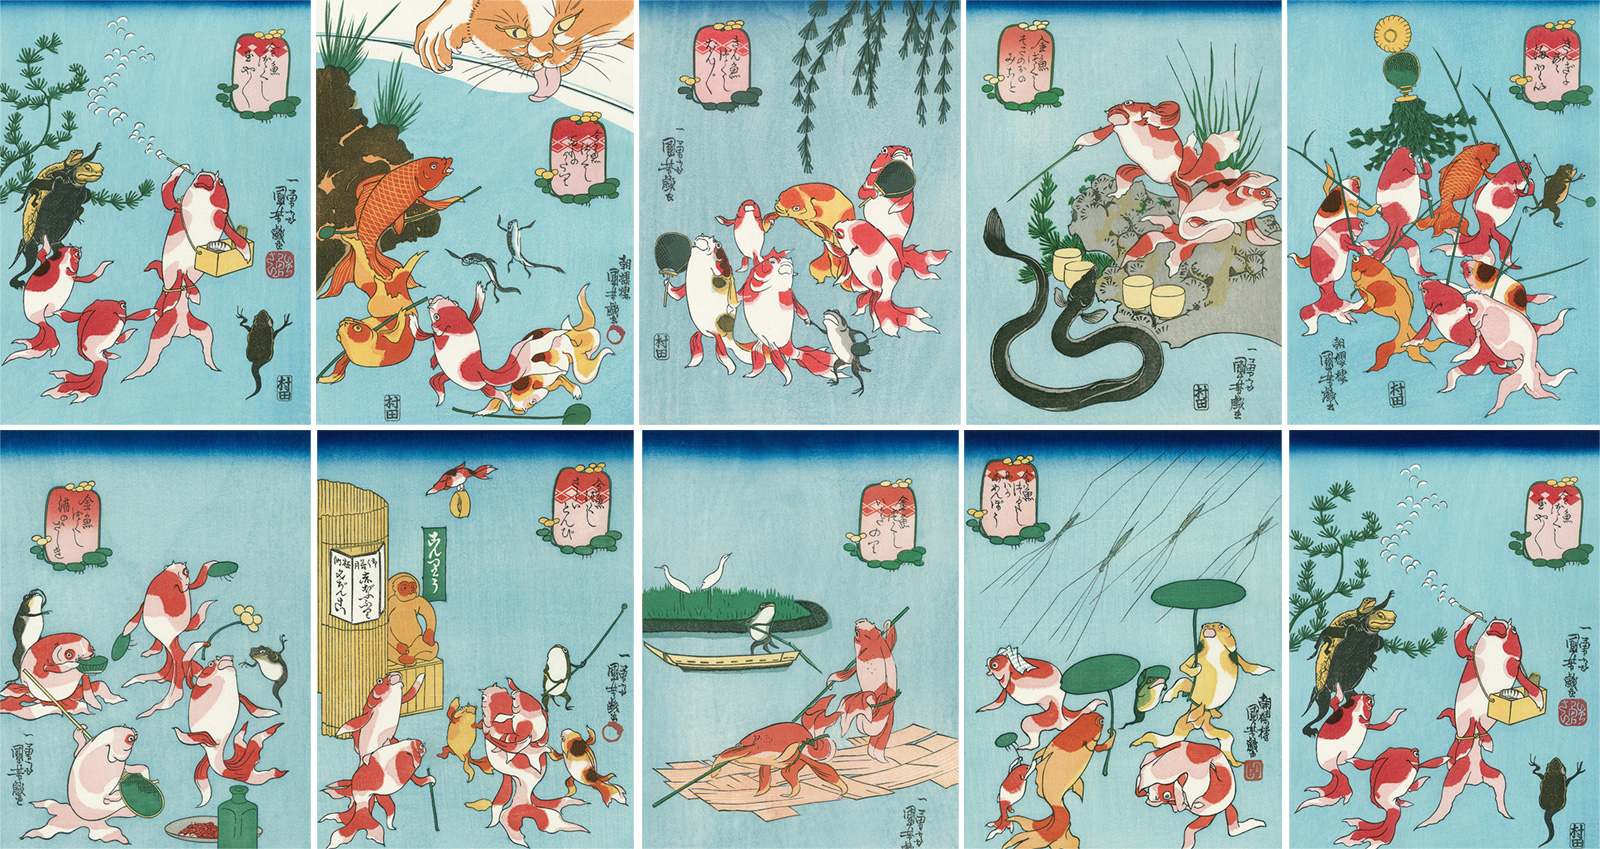 金魚の擬人化 可愛いよ 歌川国芳の浮世絵 金魚づくし が無料のスマホ用壁紙になりました アート 日本画 浮世絵 Japaaan